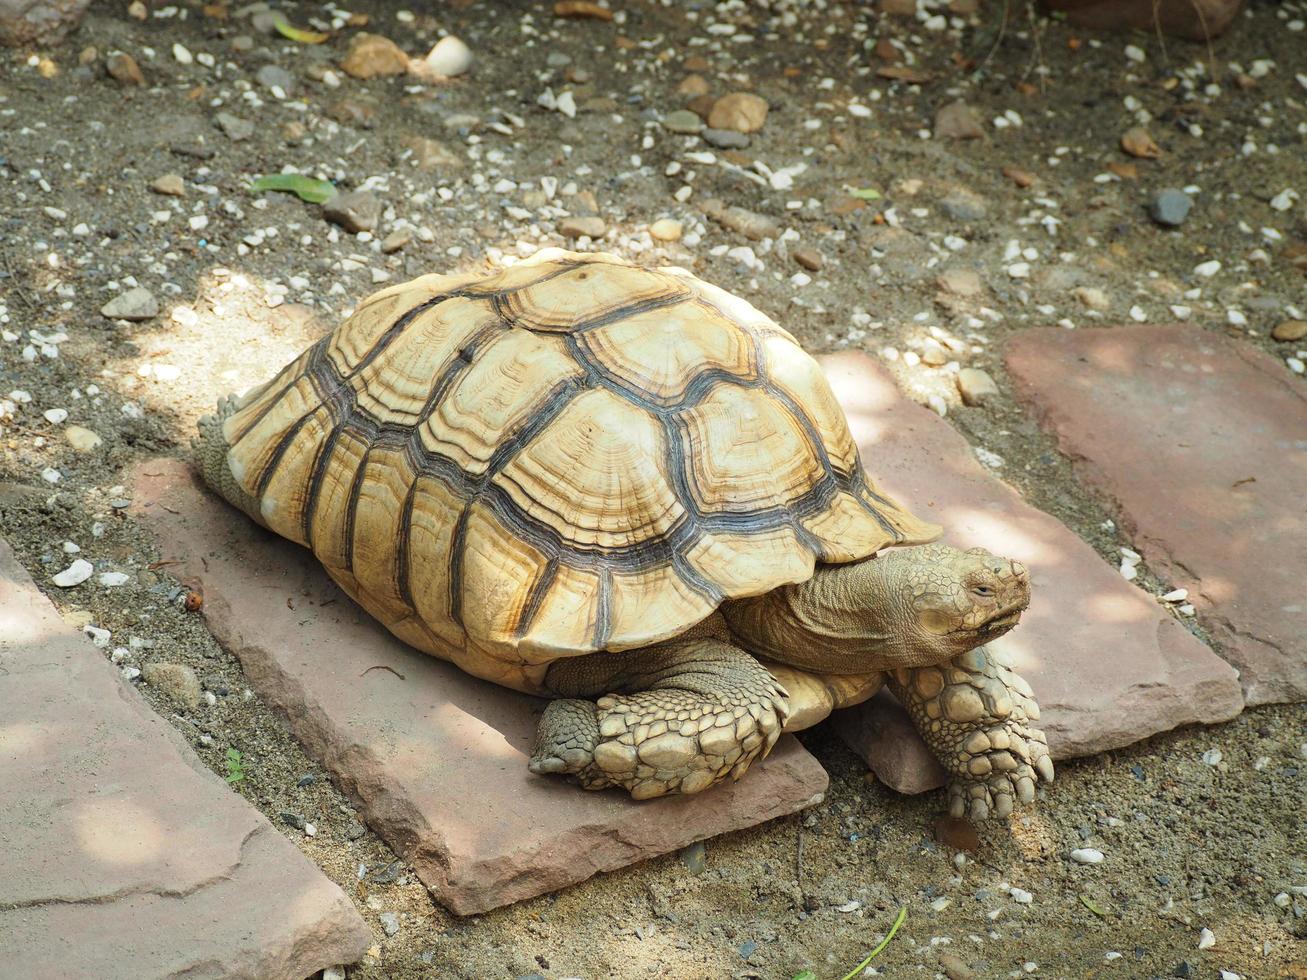 en stor sköldpadda ligger på marken. foto